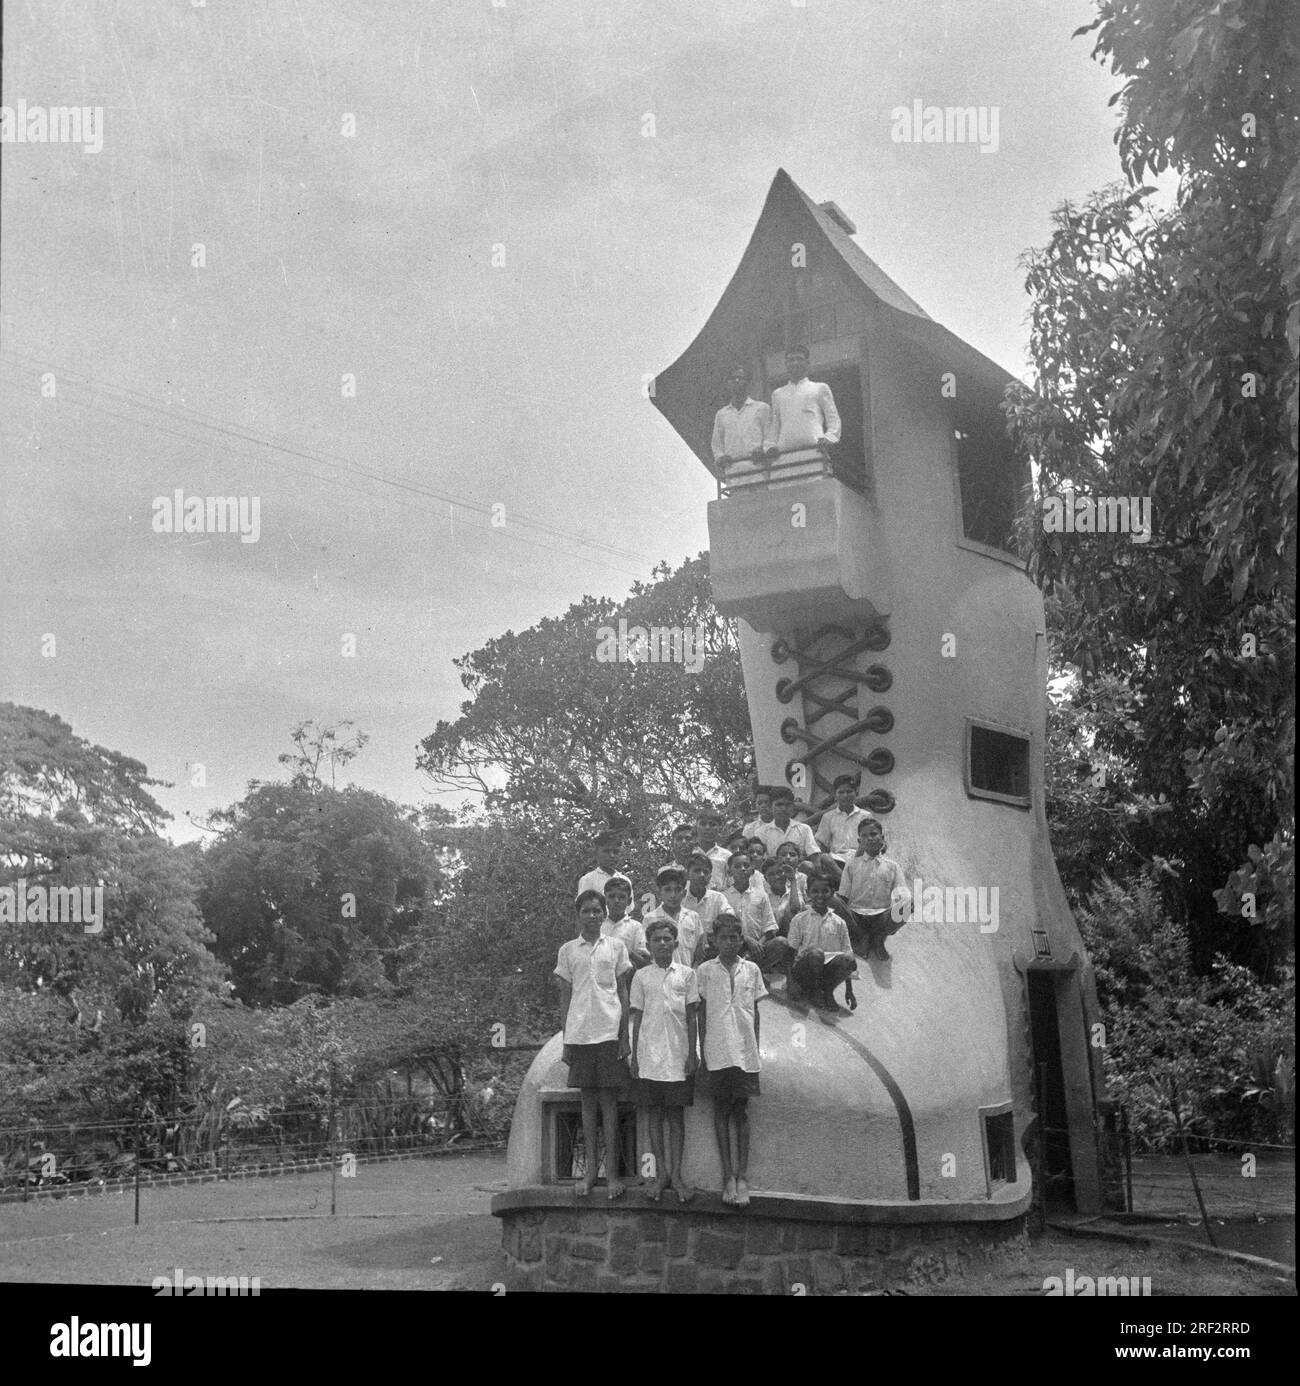 Vieux vintage des années 1900 photo noir et blanc de Grand-mère Chaussure Boot House Giant Shoe Kamla Nehru Park Malabar Hill Mumbai Inde des années 1950 Banque D'Images